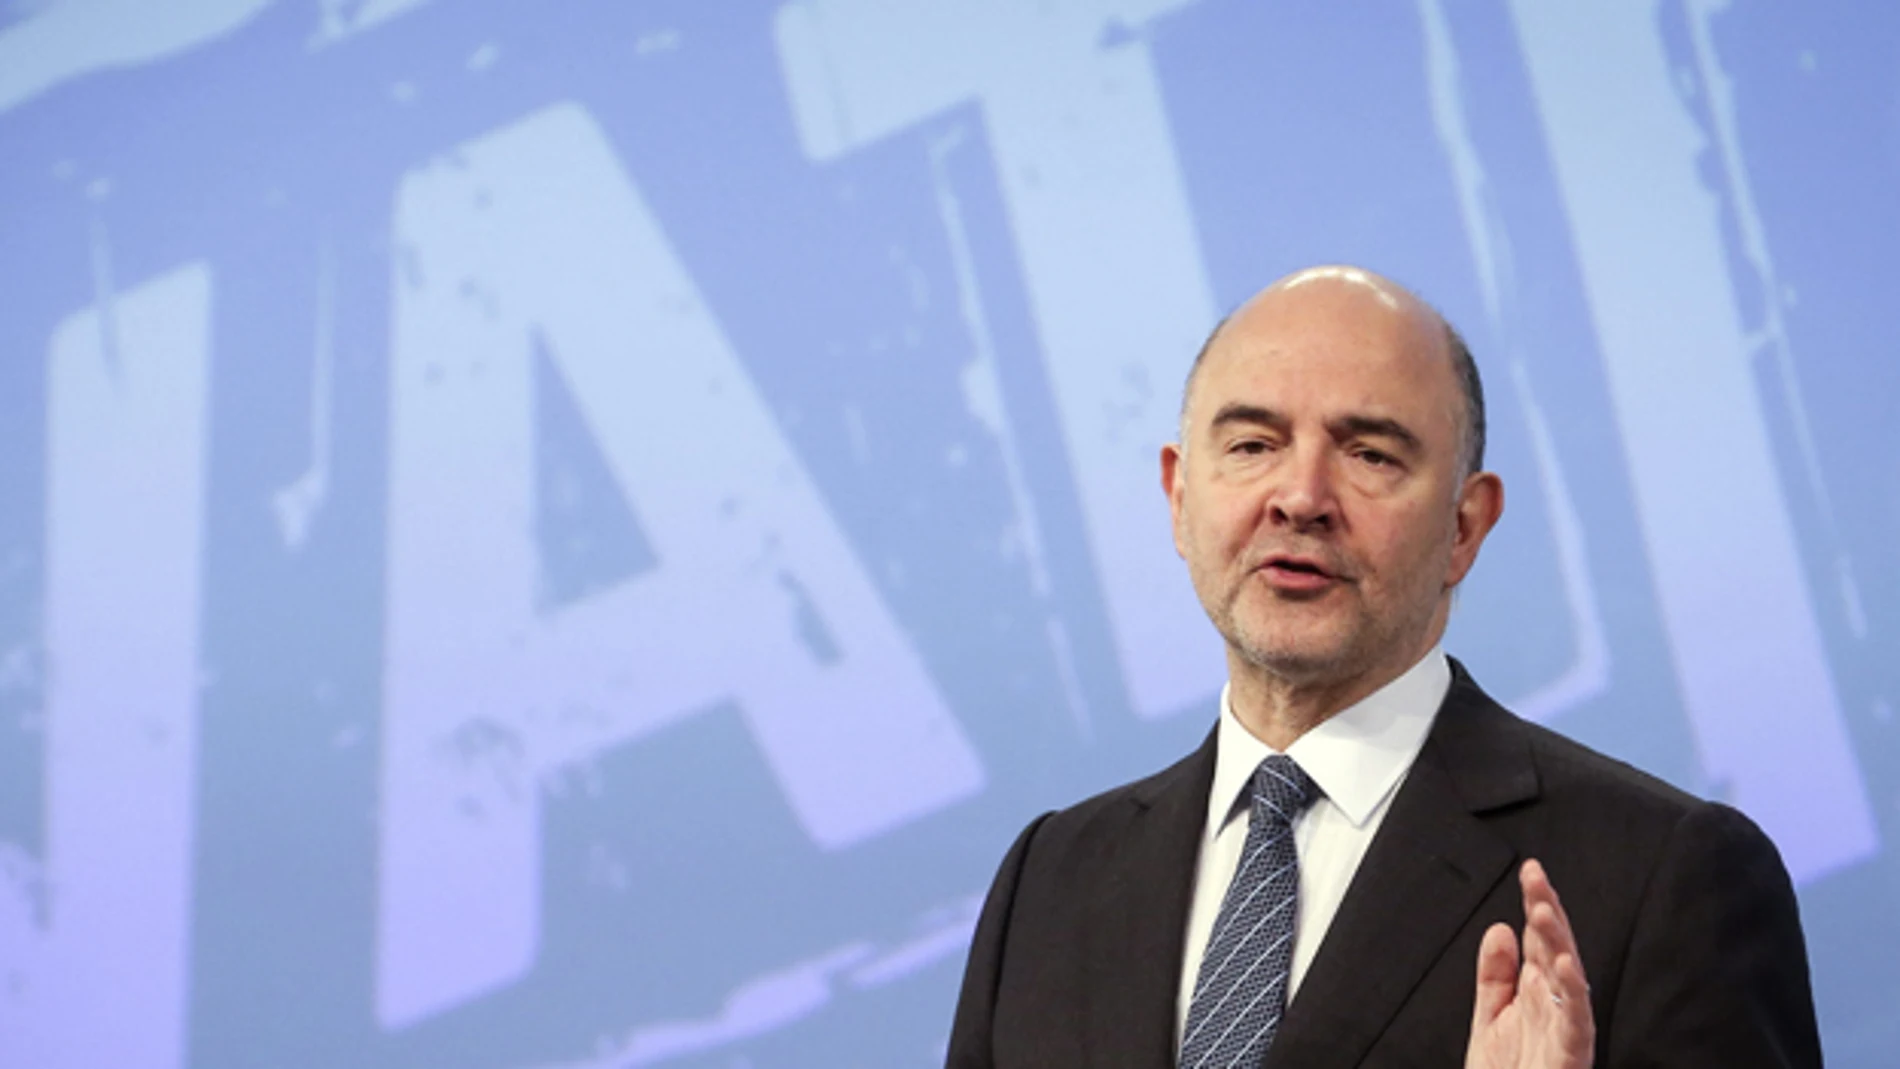 Pierre Moscovici, durante la rueda de prensa